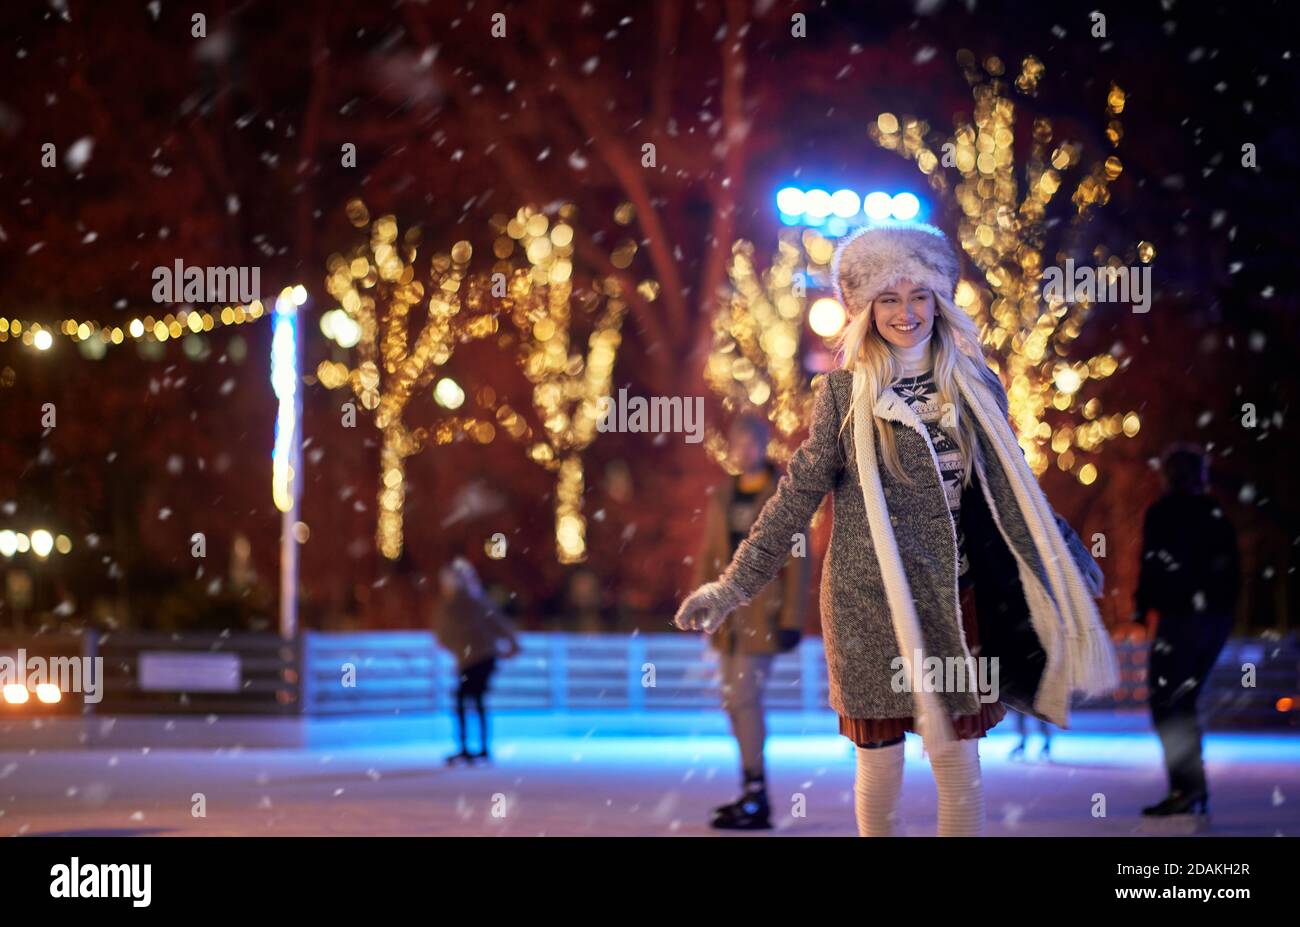 A young girl enjoying skating at ice rink on a beautiful magical night. Skating, hobby, winter Stock Photo